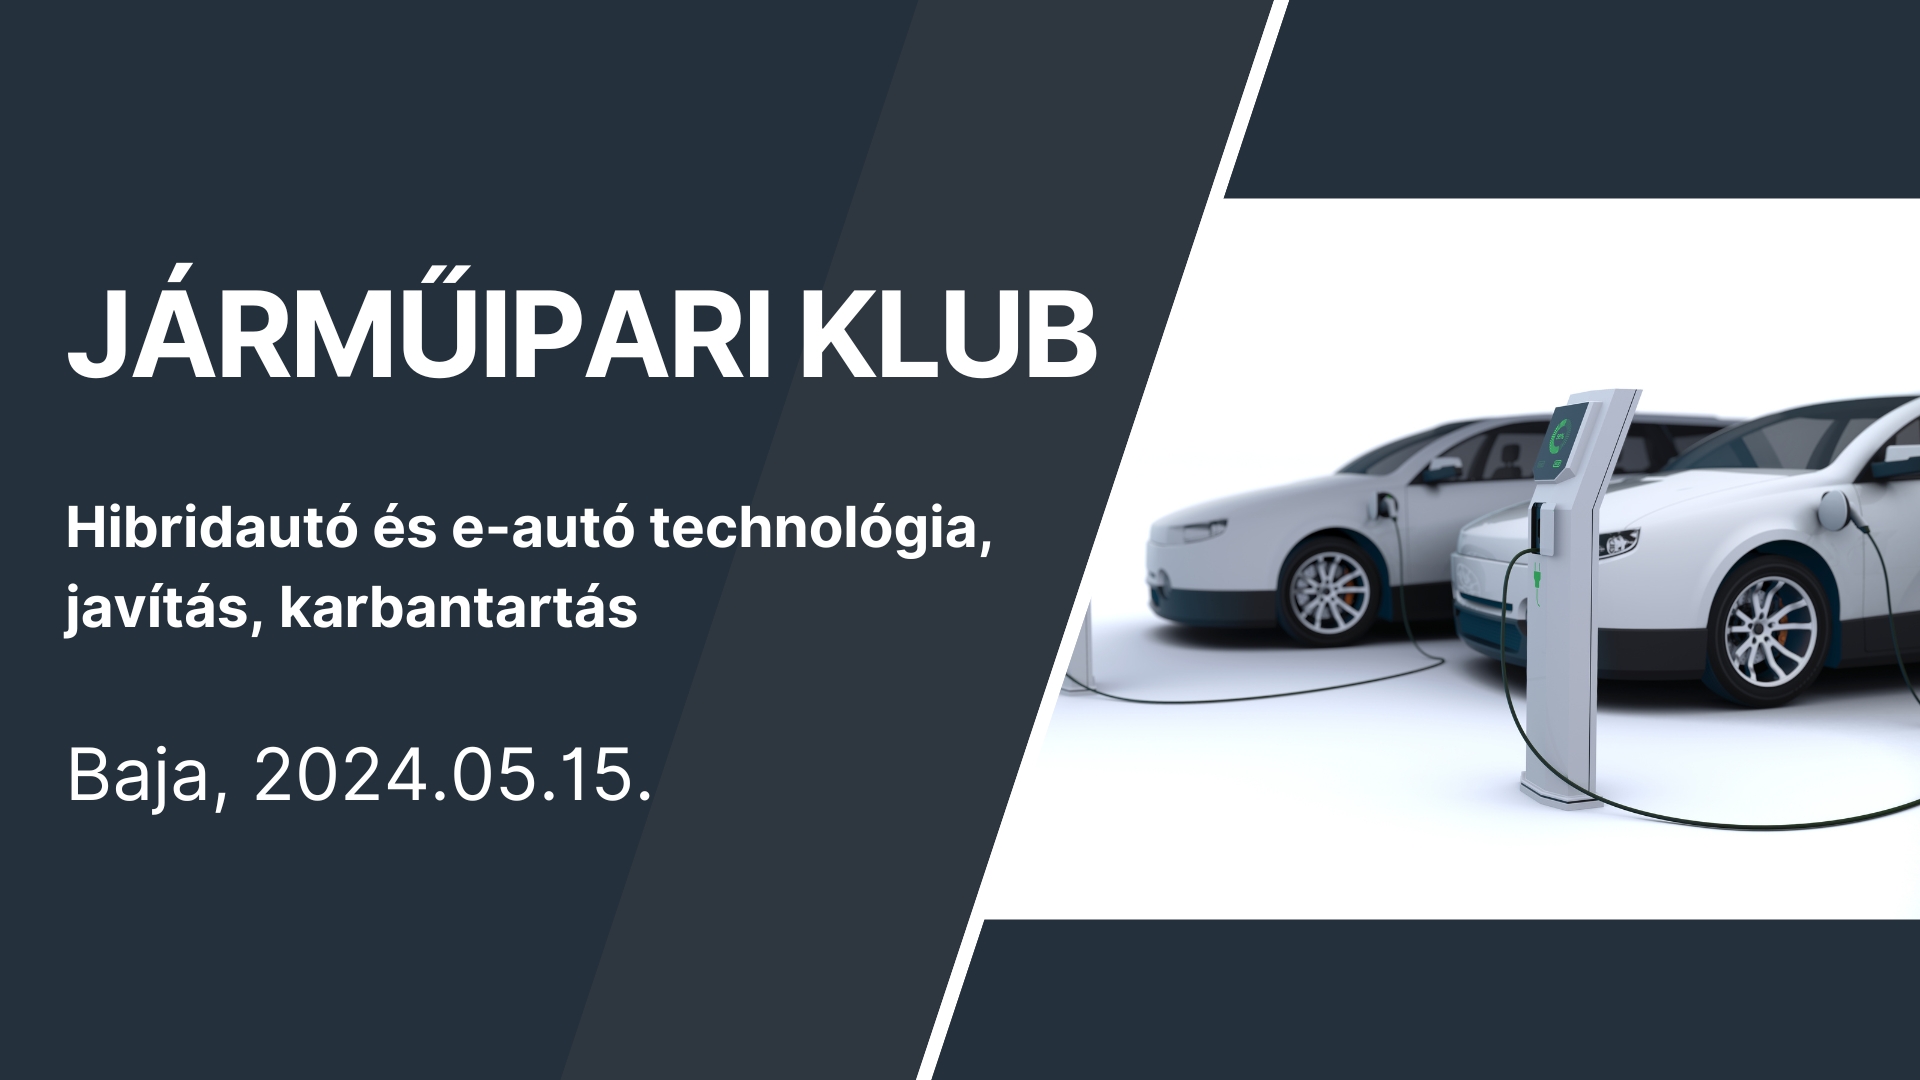 JÁRMŰIPARI KLUB - Hibridautó és e-autó technológia, javítás, karbantartás - Baja, 2024.05.15.